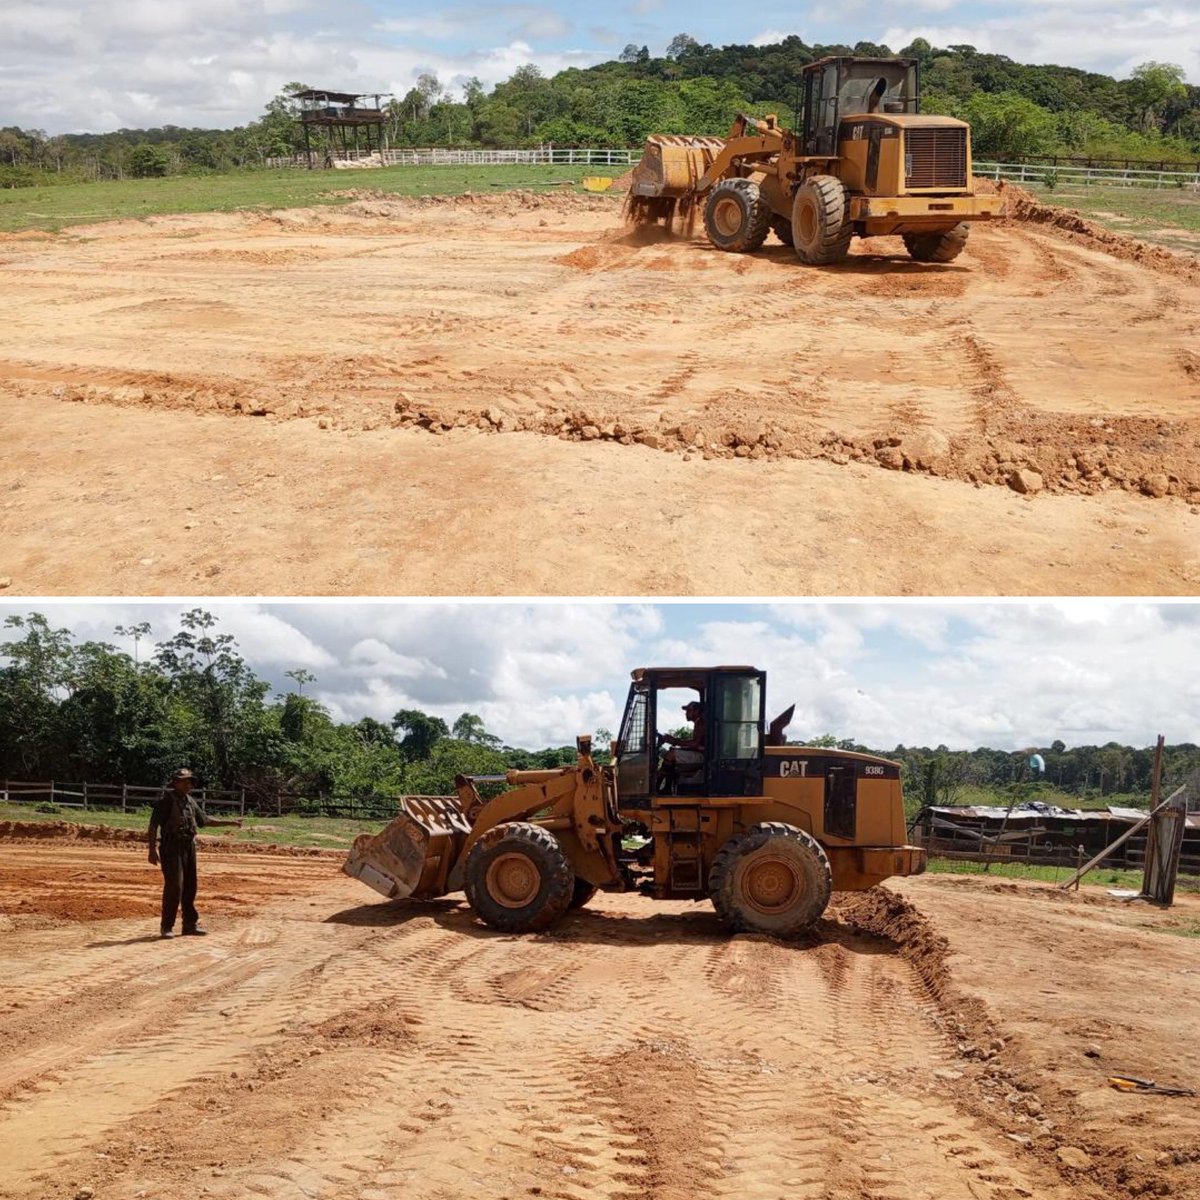 60 helipuntos en construcción en nuestro estado 24 “Guayana Esequiba”.

#IntegrarEsVencer